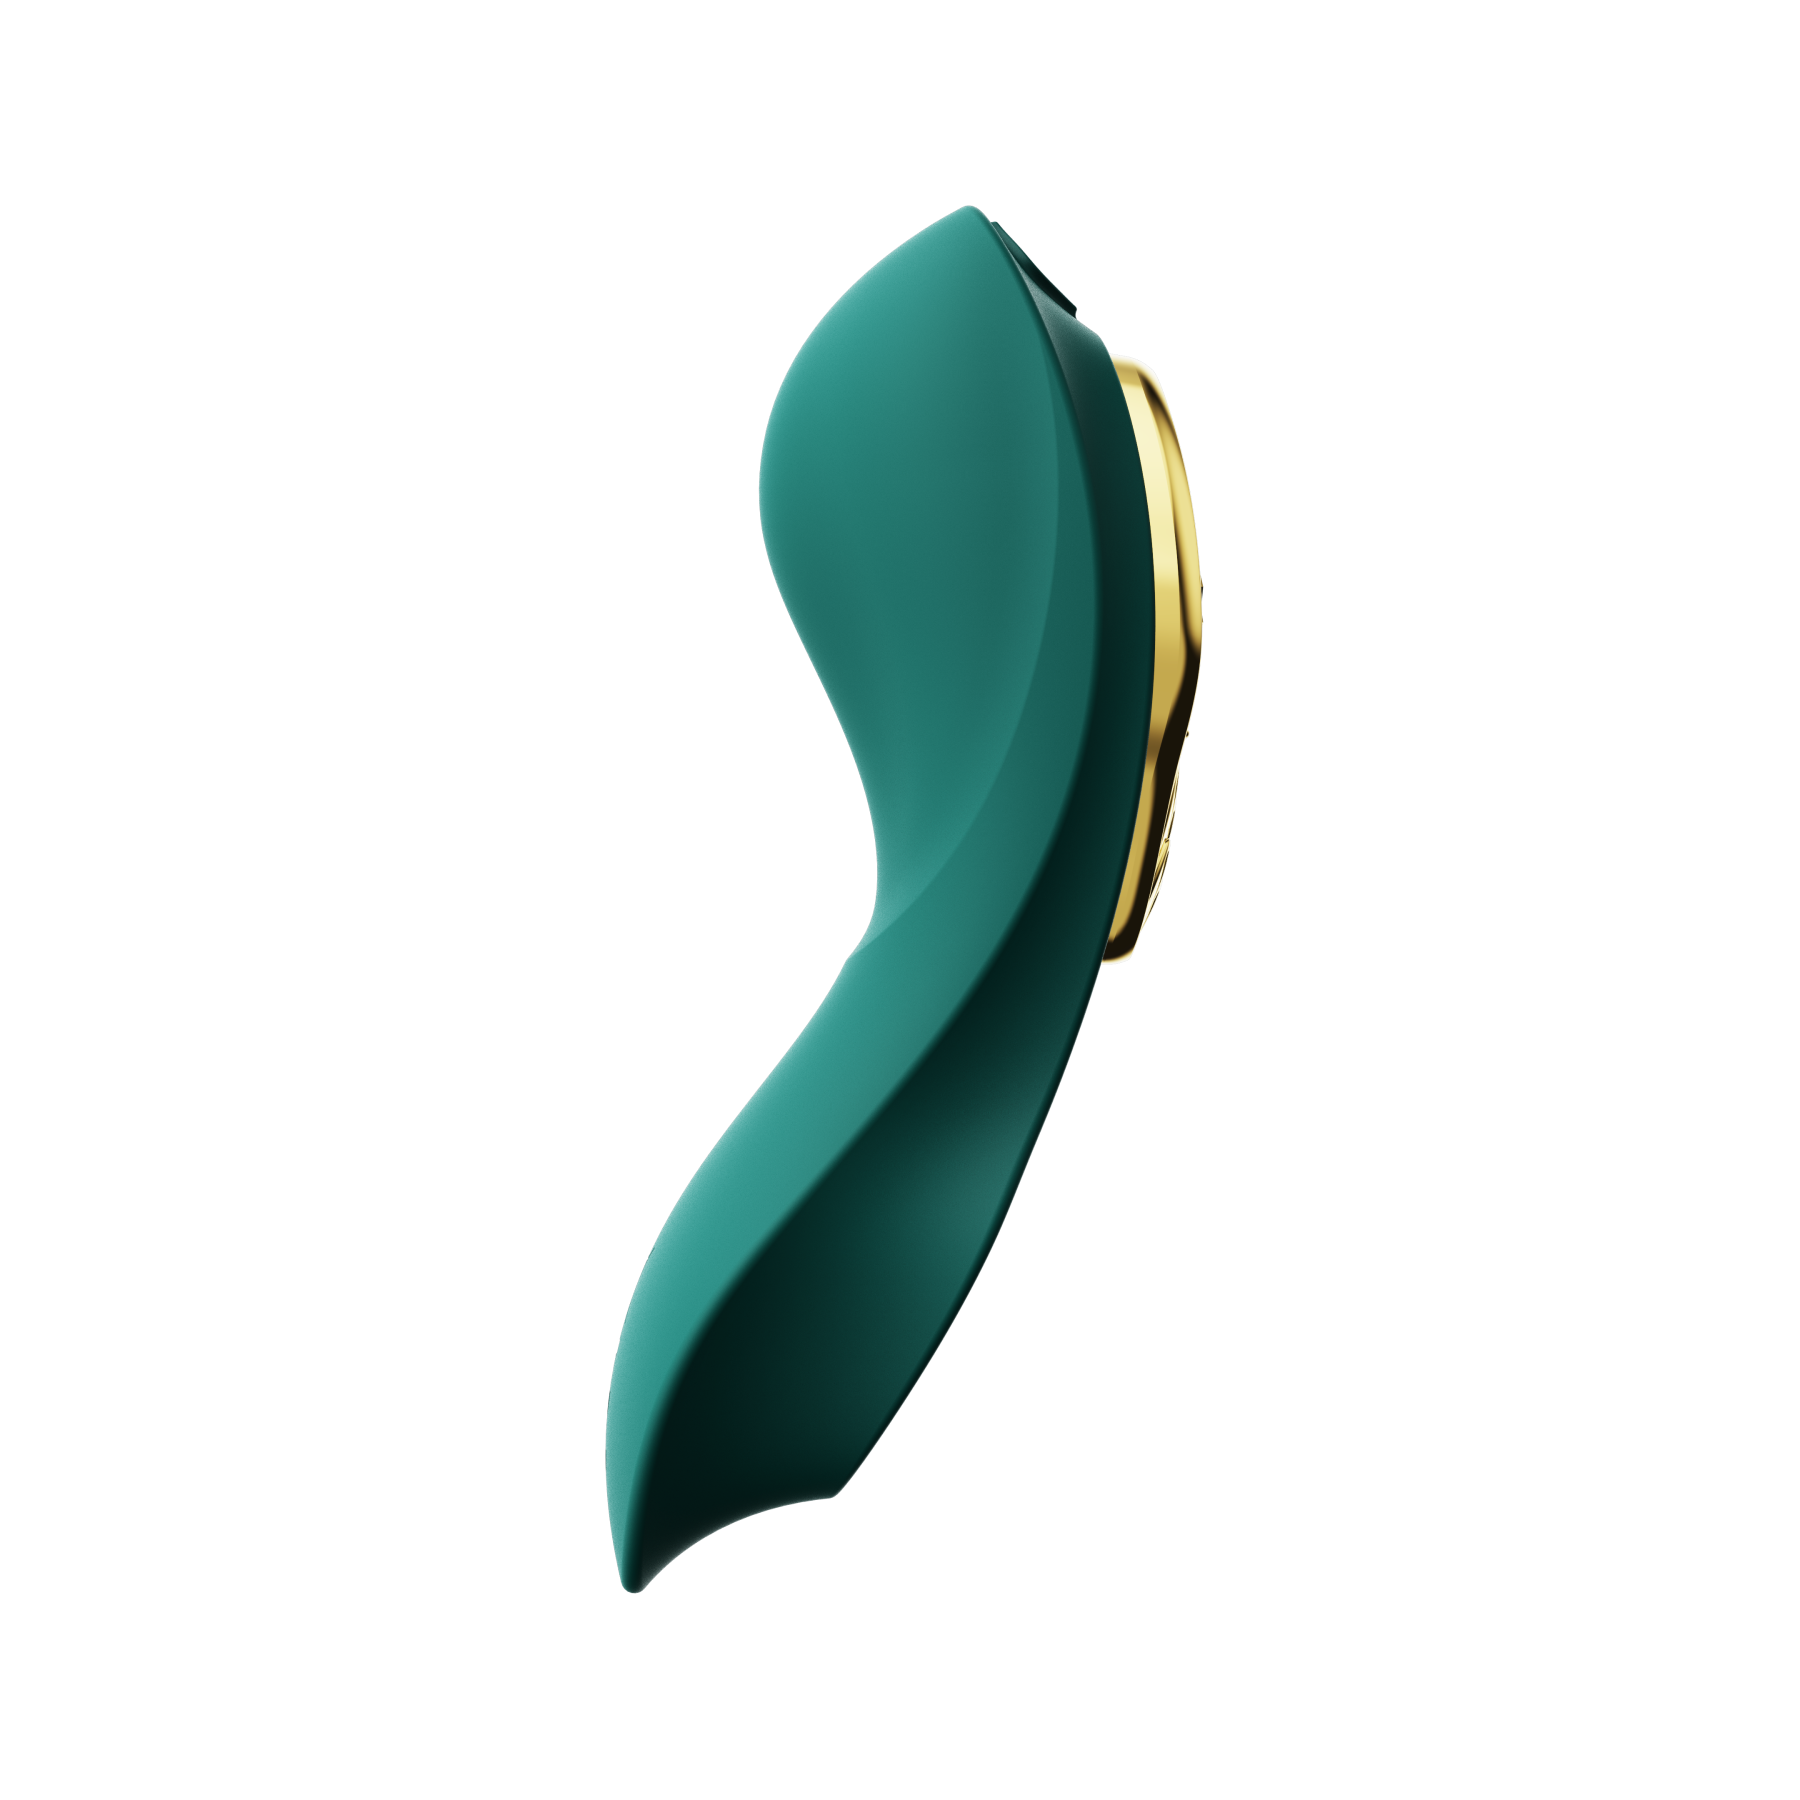 ZALO Aya Wearable Vibrator Turquoise Green